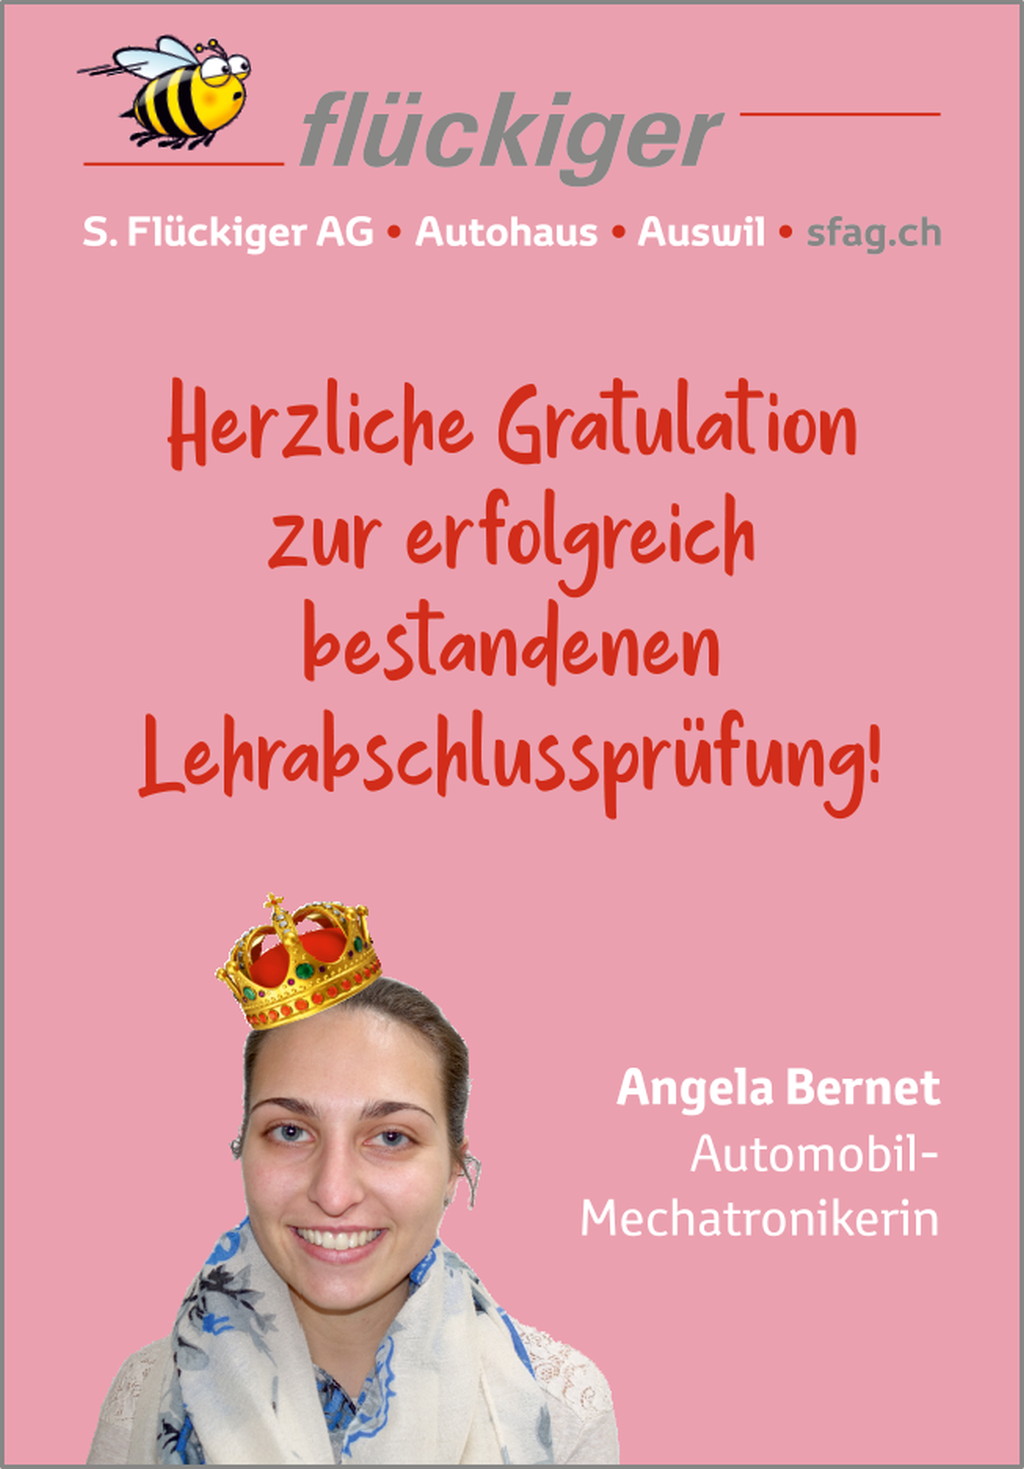 flückiger Autohaus - Wir gratulieren Angela ganz herzlich zur bestandenen Lehrabschlussprüfung als Automobil-Mechatronikerin